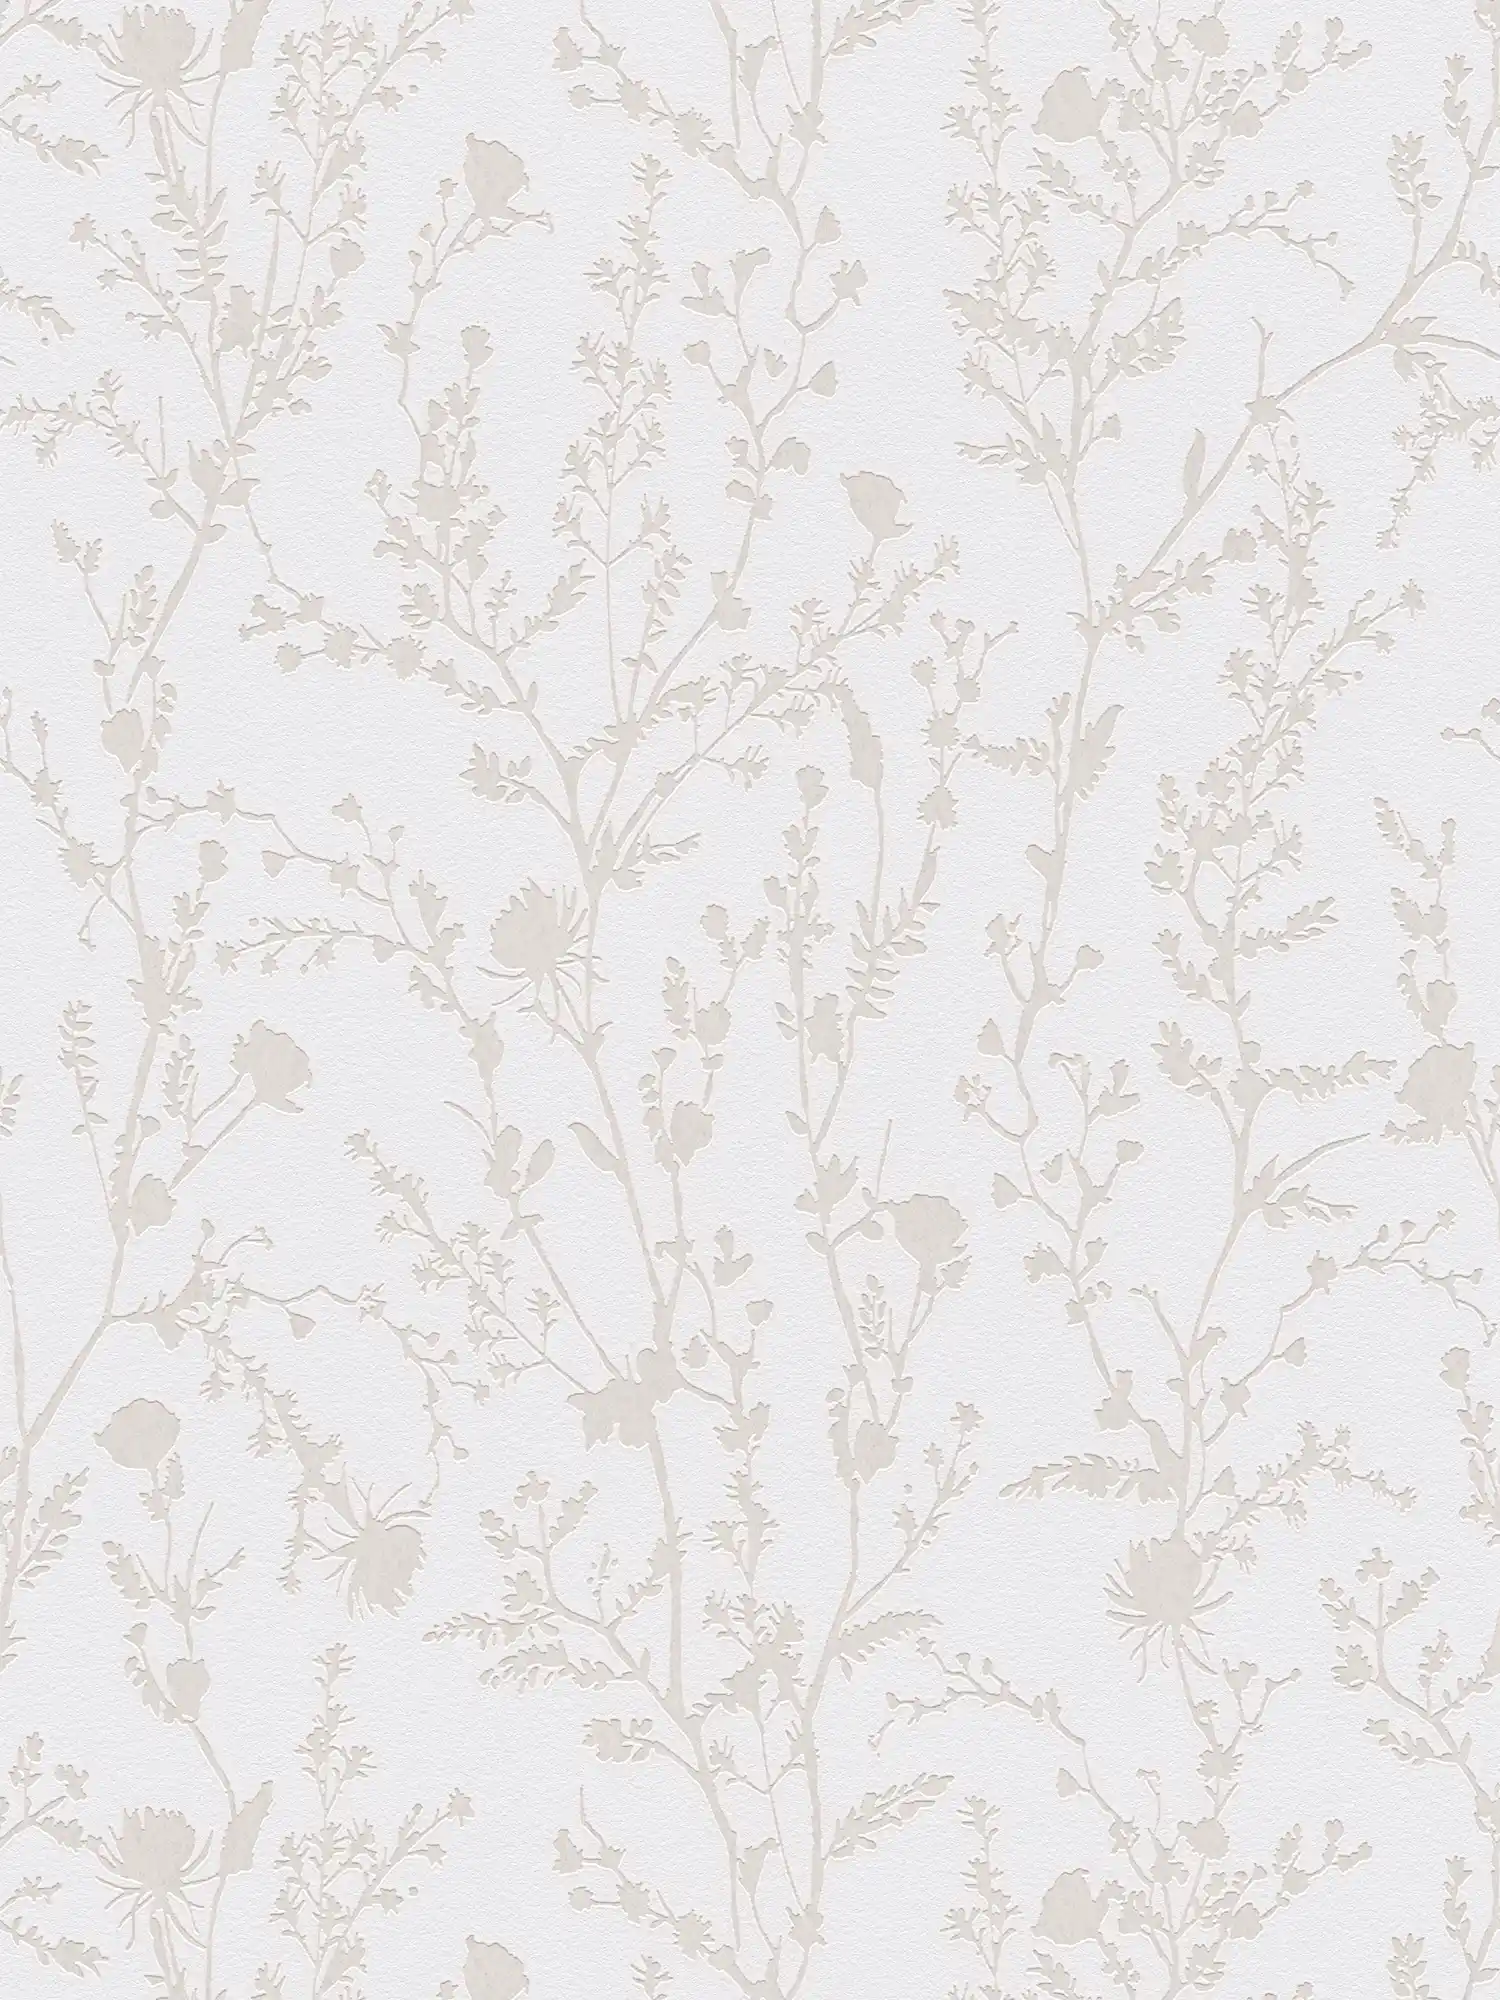 Papel pintado no tejido con motivo floral - gris claro, blanco
